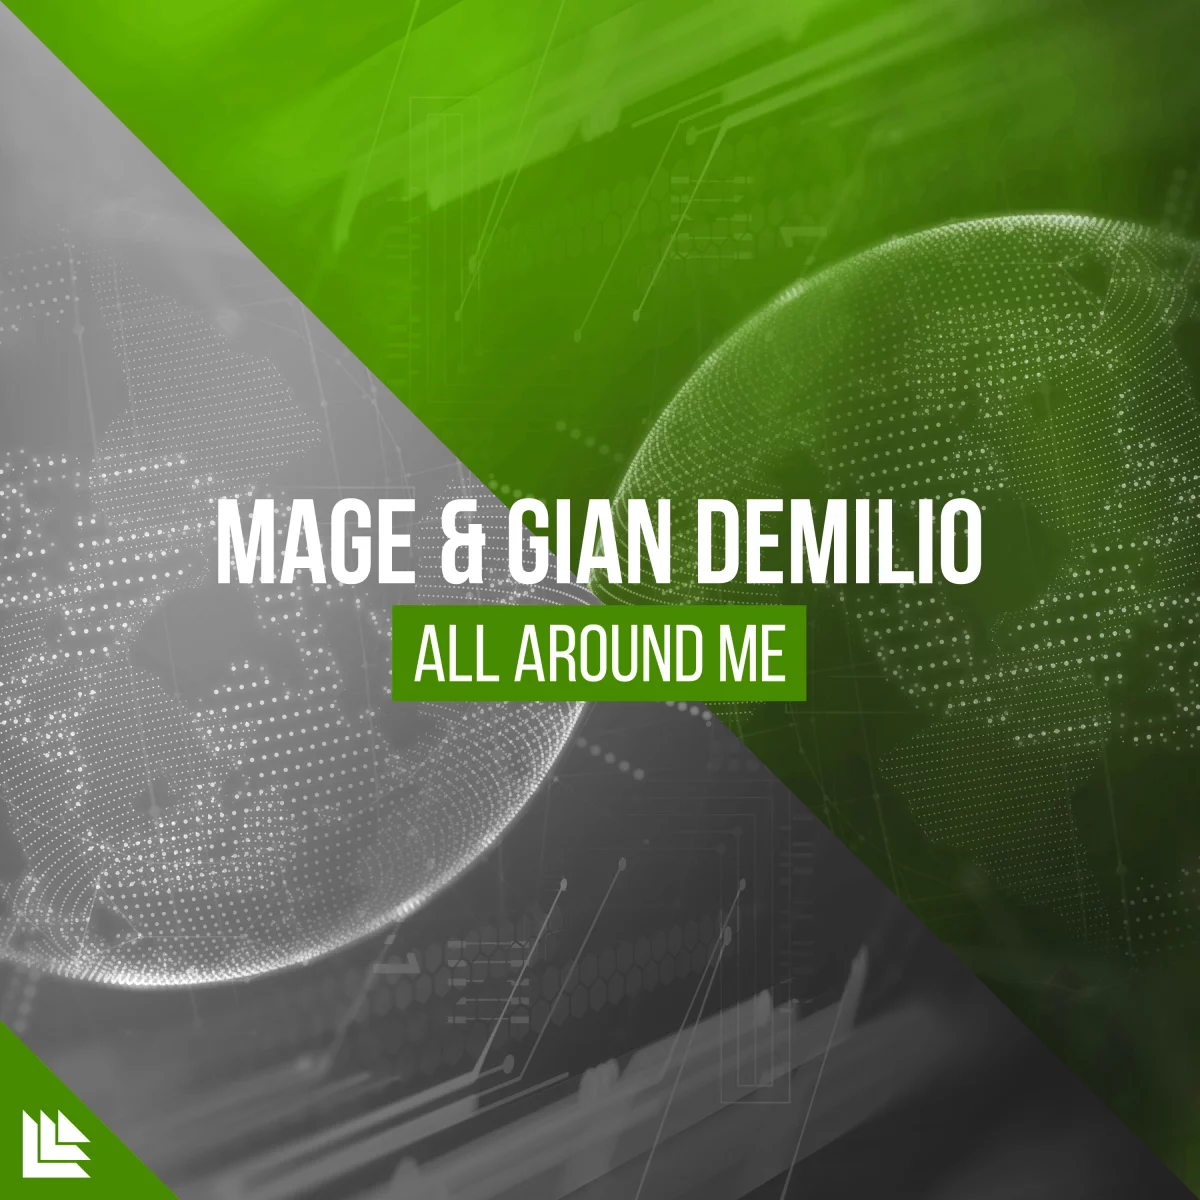 All Around Me - MAGE⁠ & Gian Demilio